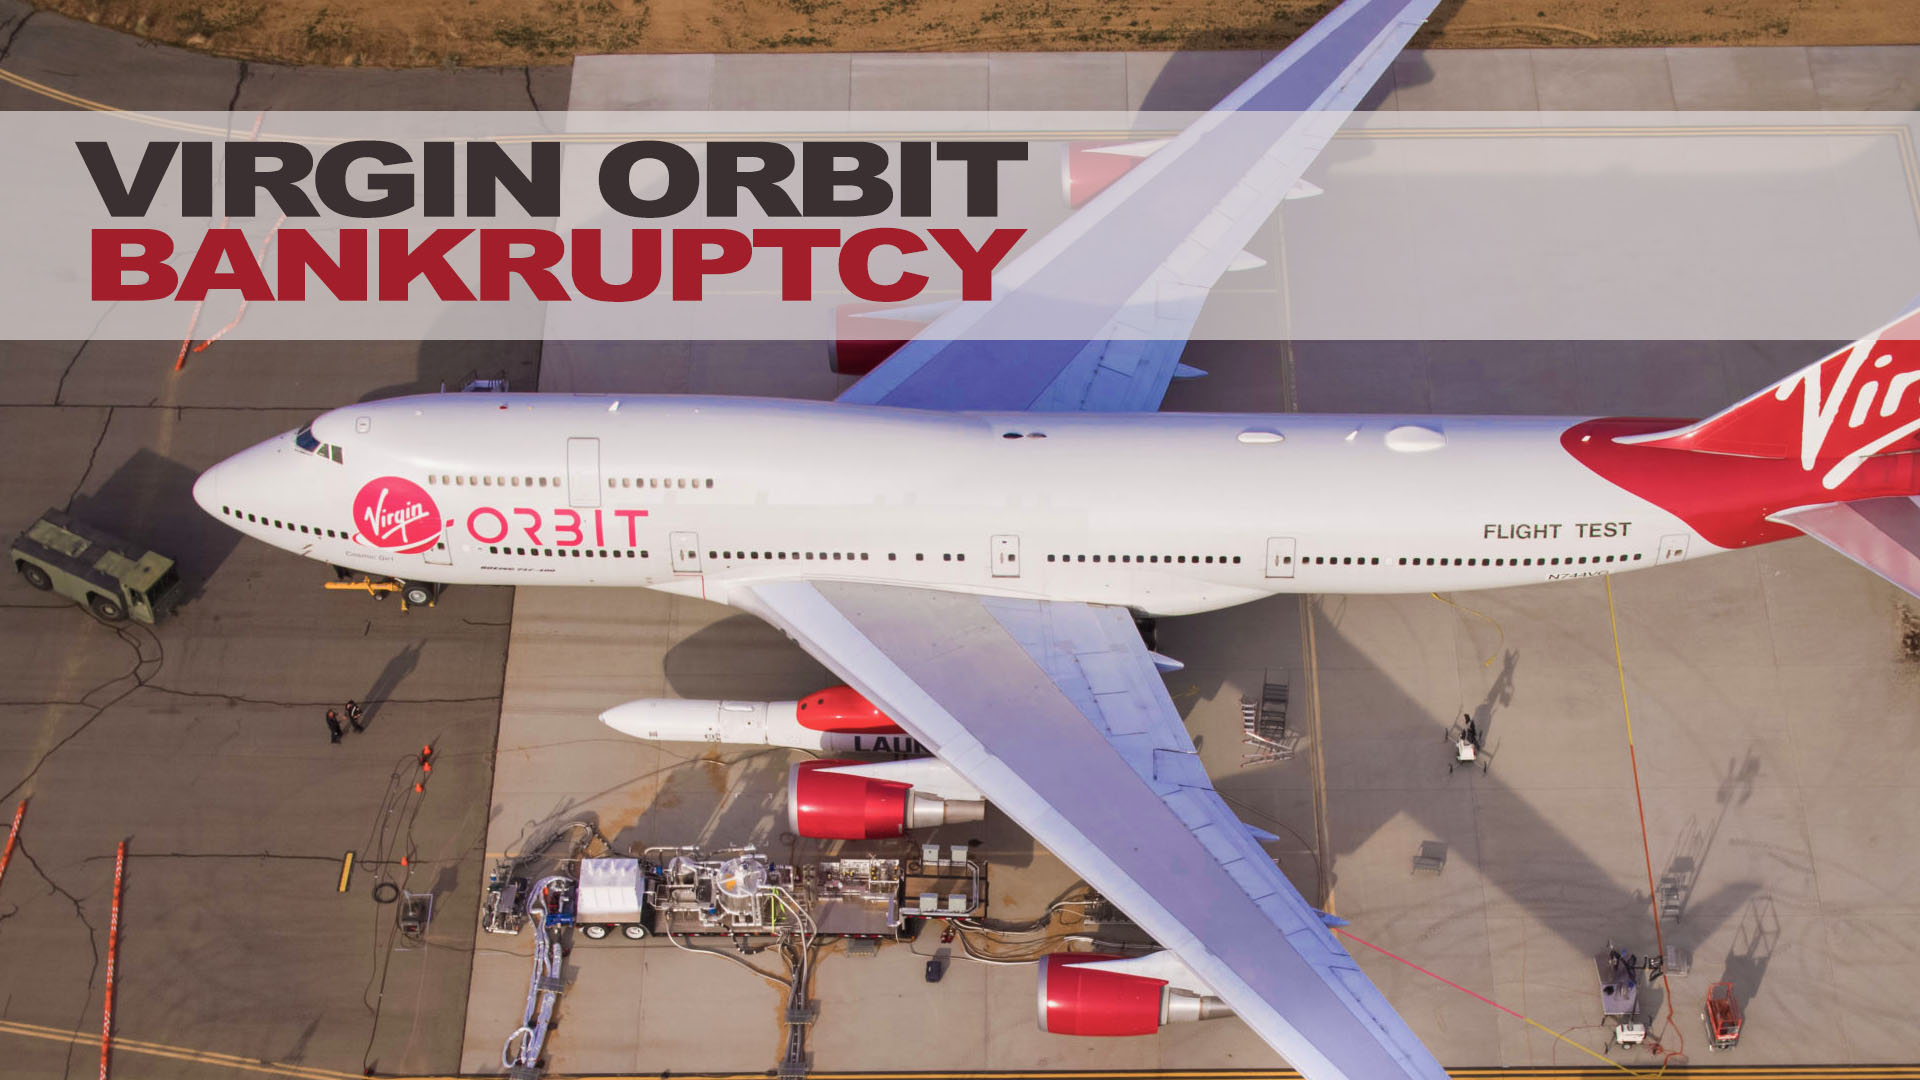 Virgin Orbit Bankruptcy